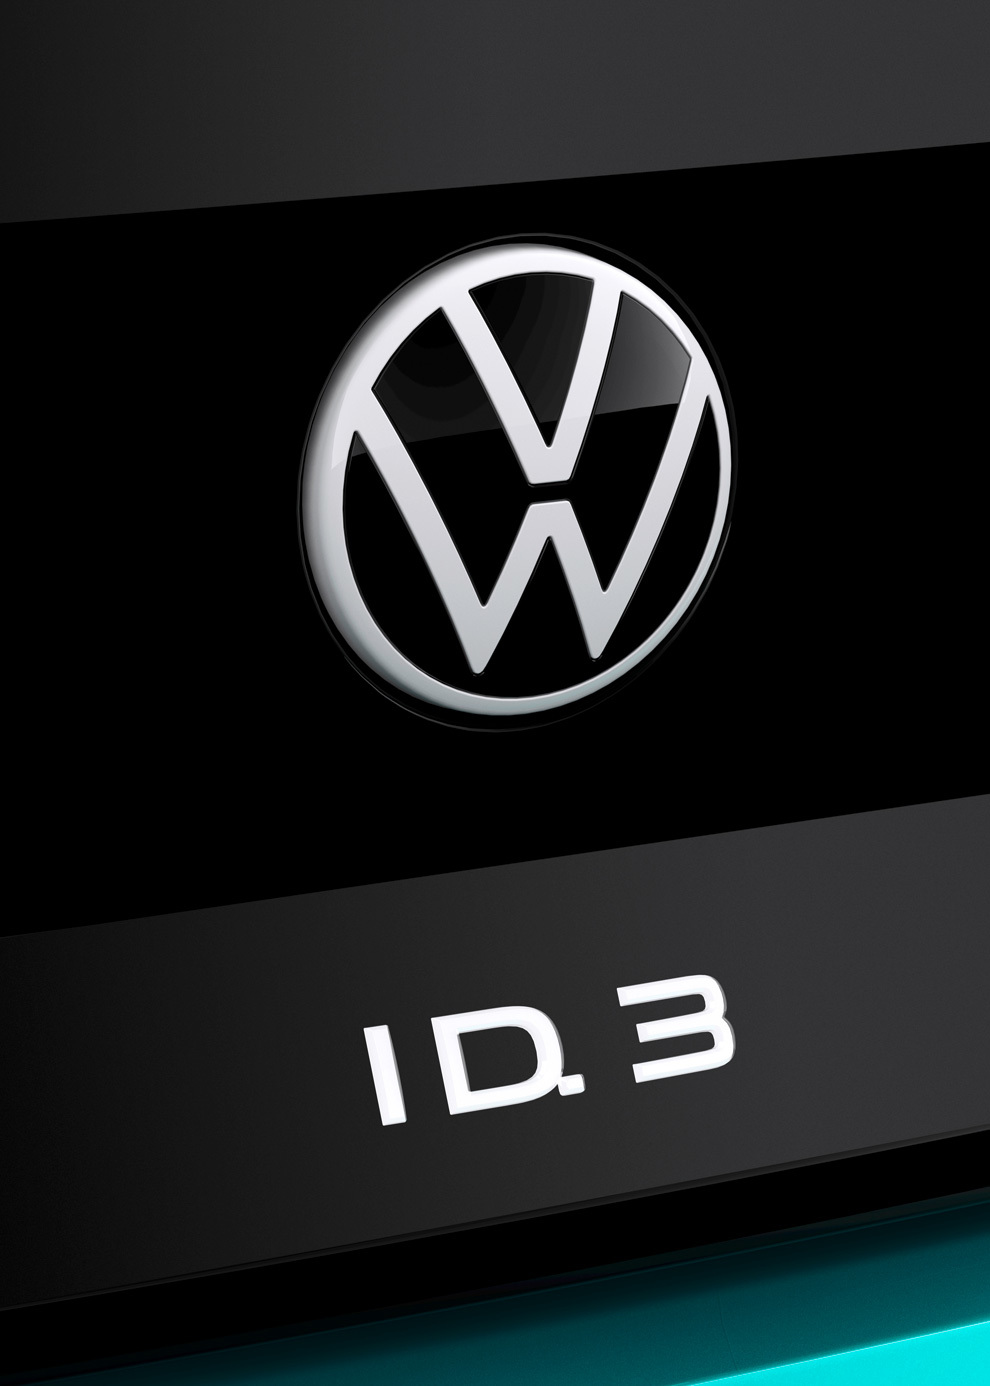 El ID.3 es el lanzamiento ms importante de Volkswagen en este 2020.